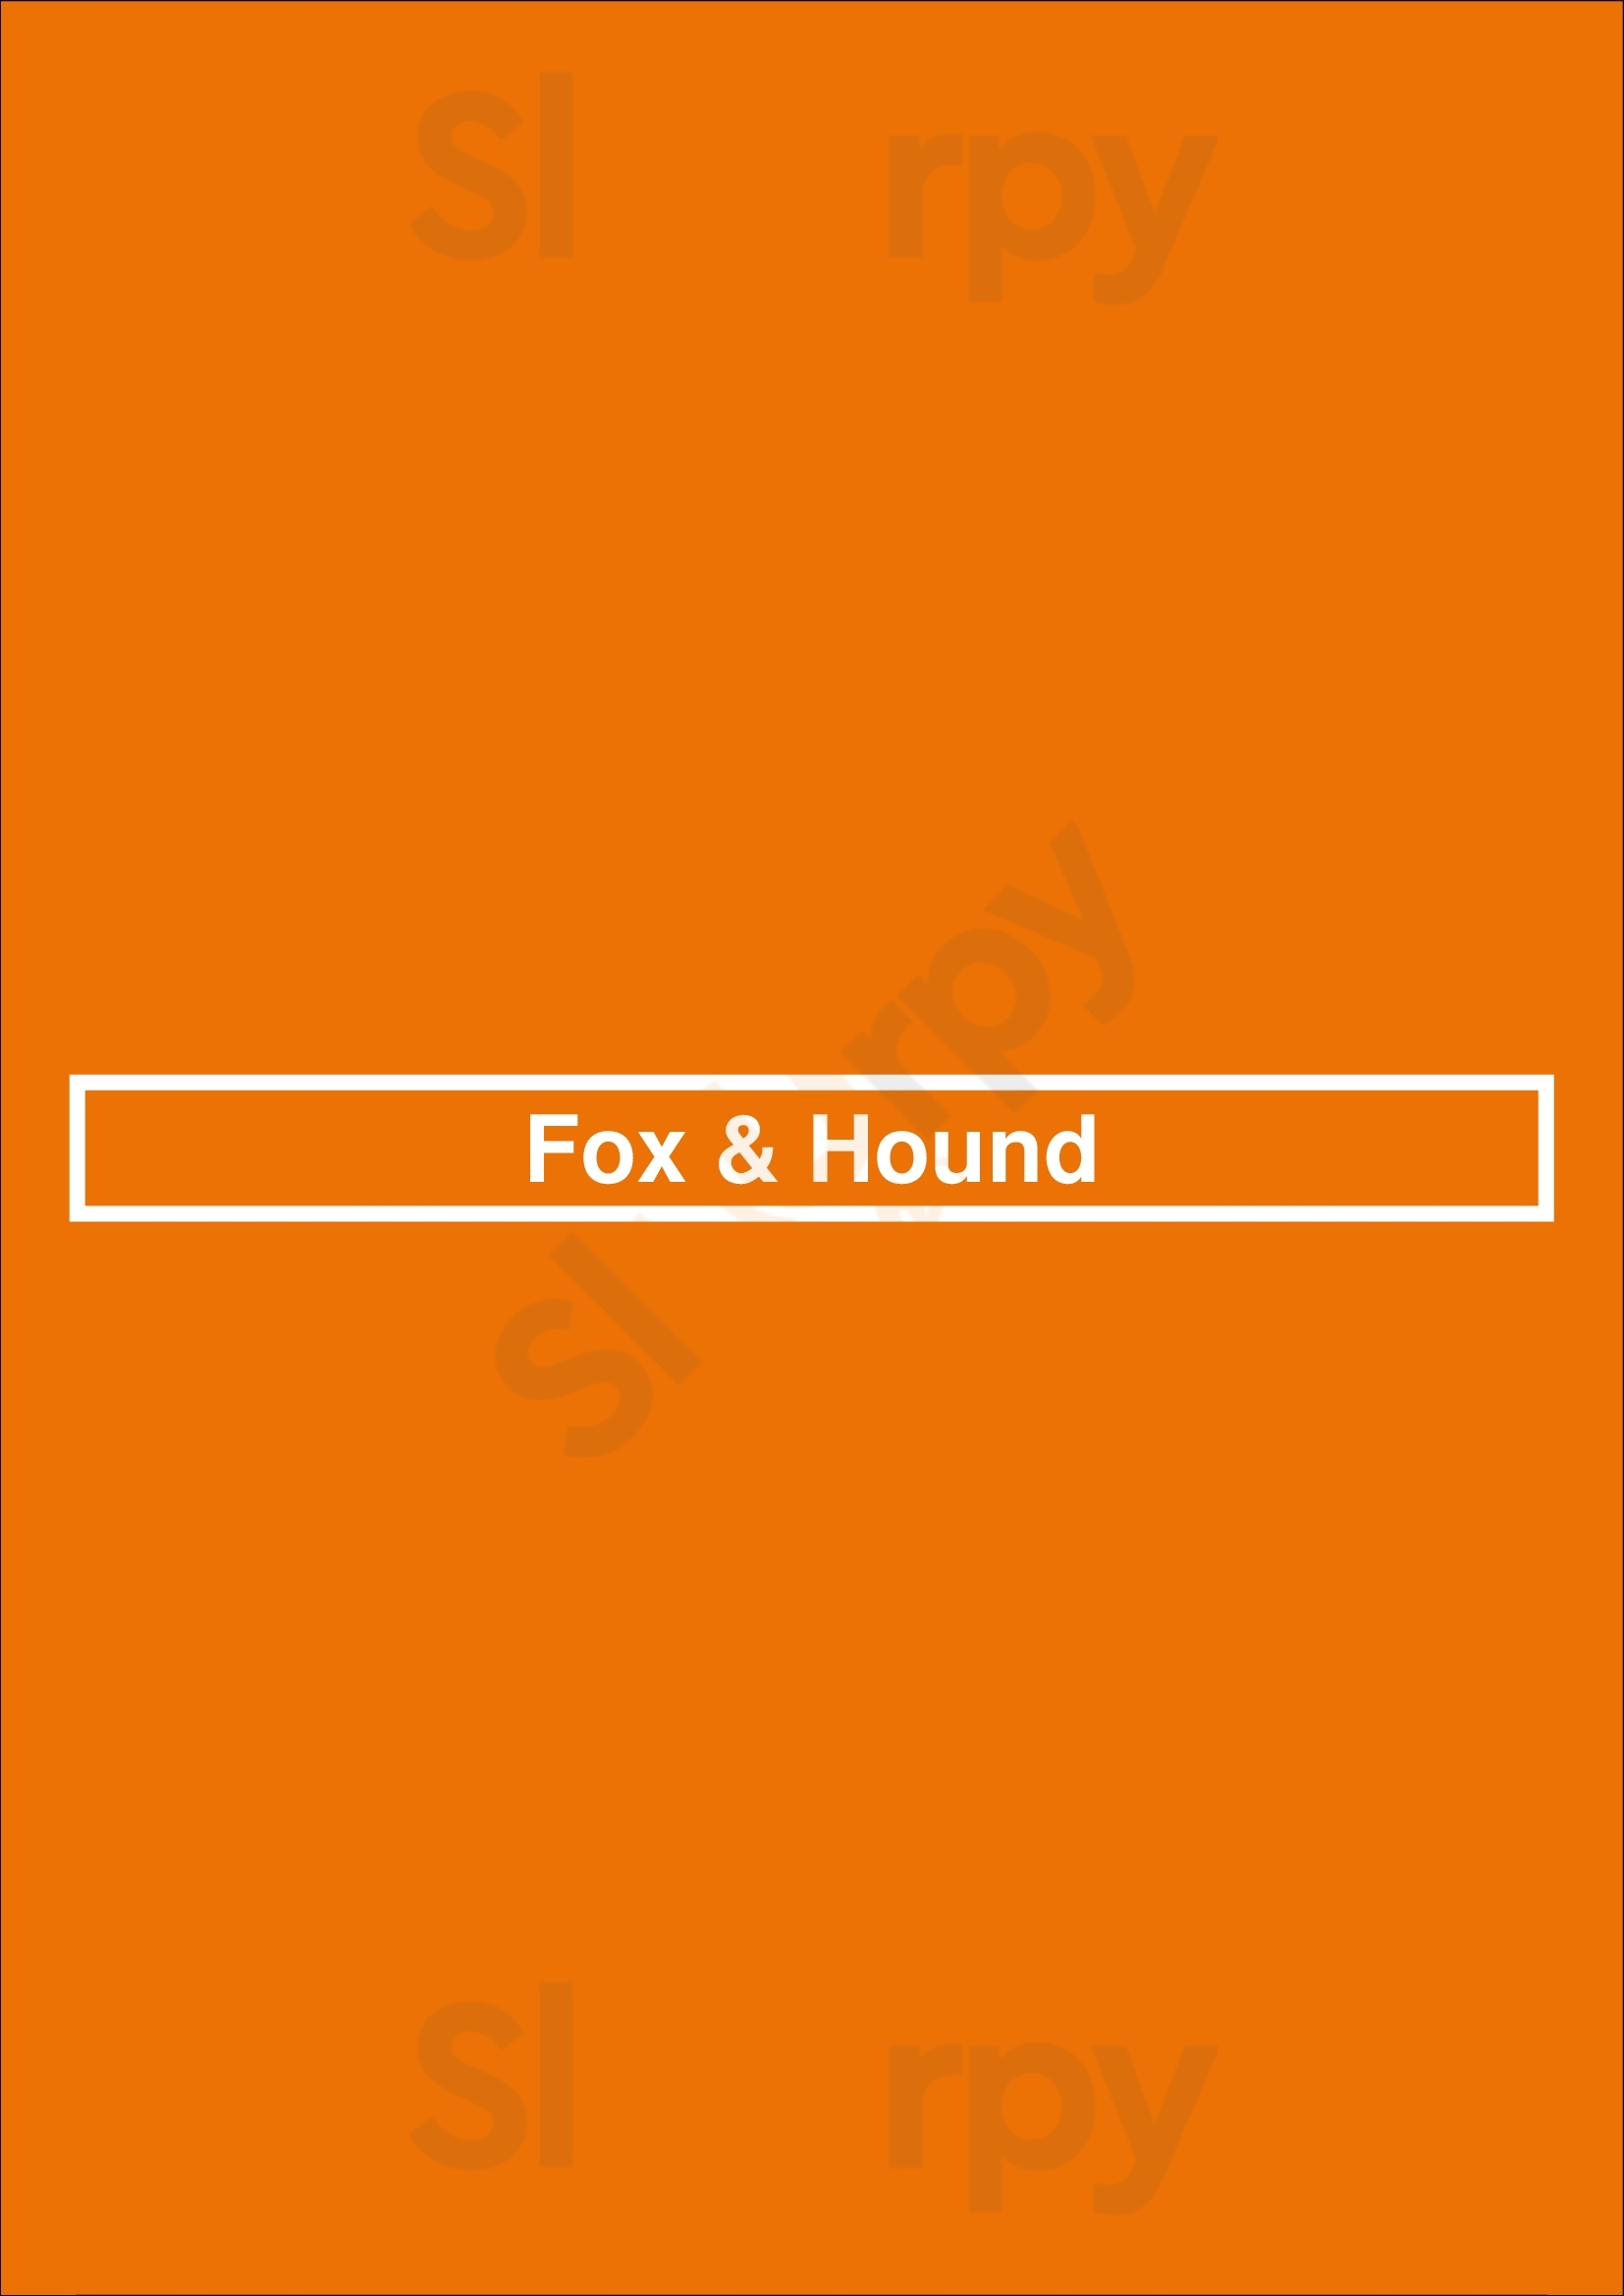 Fox & Hound Philadelphia Menu - 1